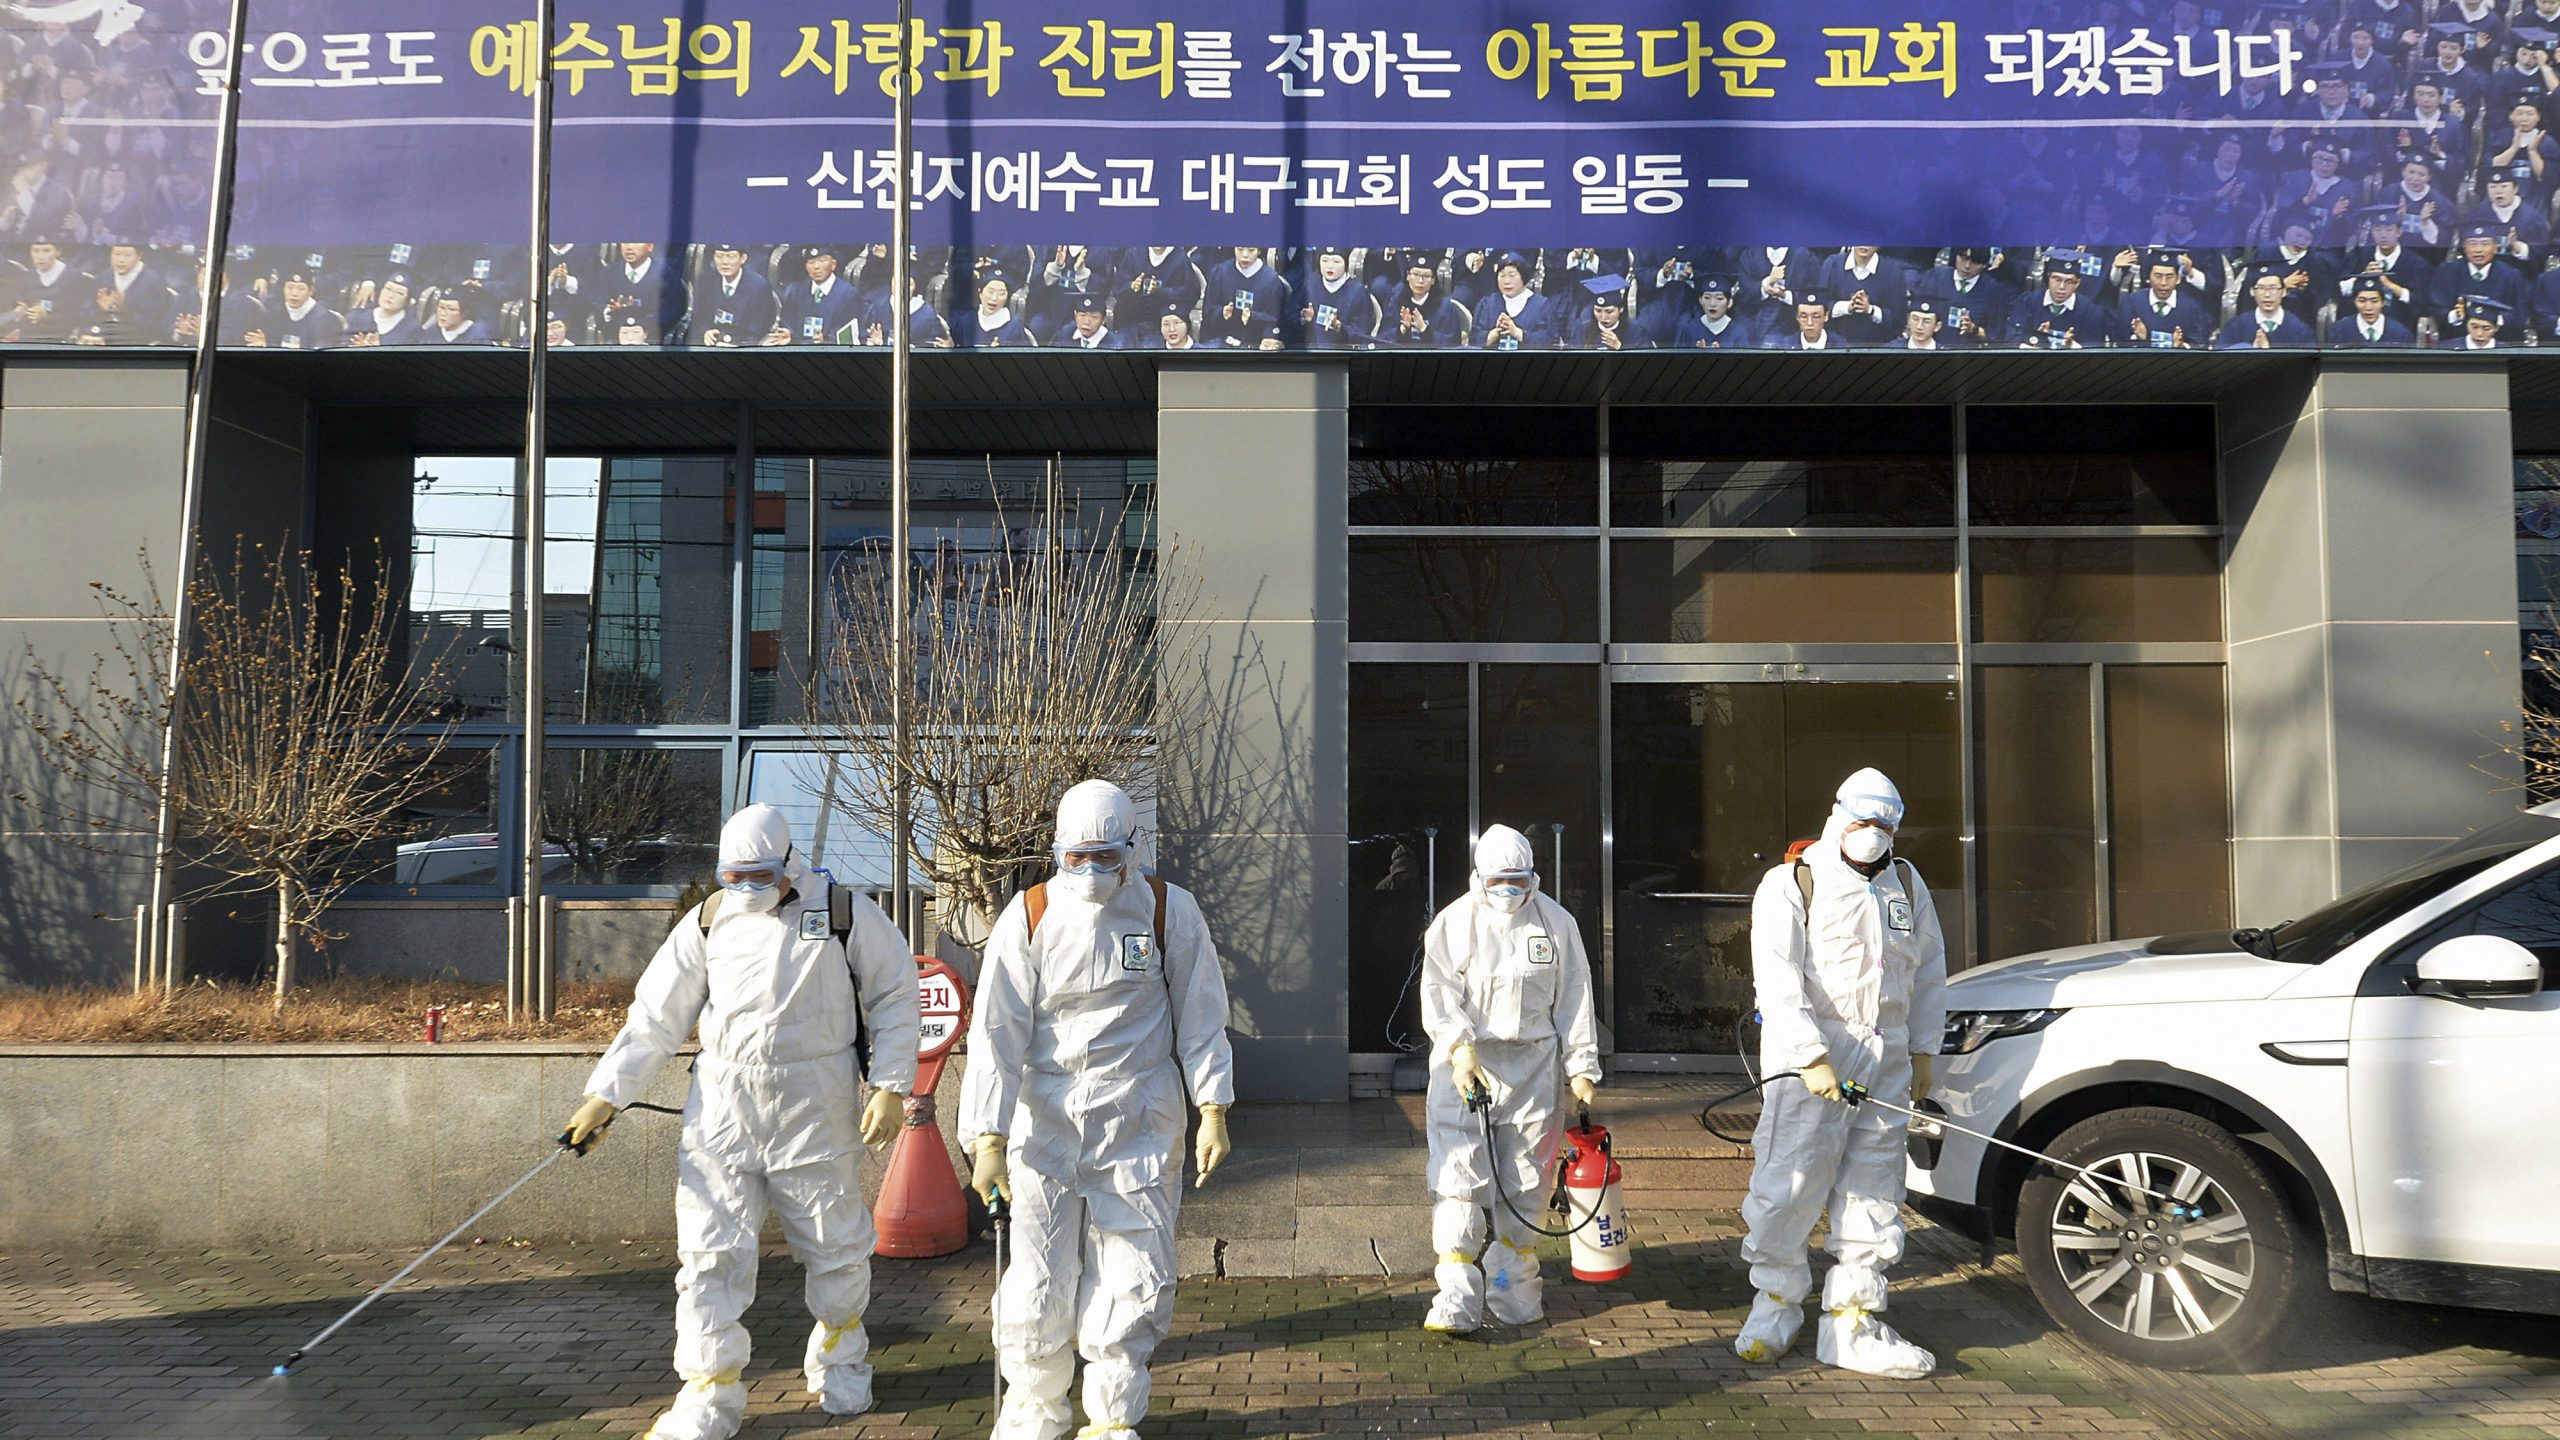 Prvi smrtni slučaj od korona virusa u Južnoj Koreji, više od 100 zaraženih 1